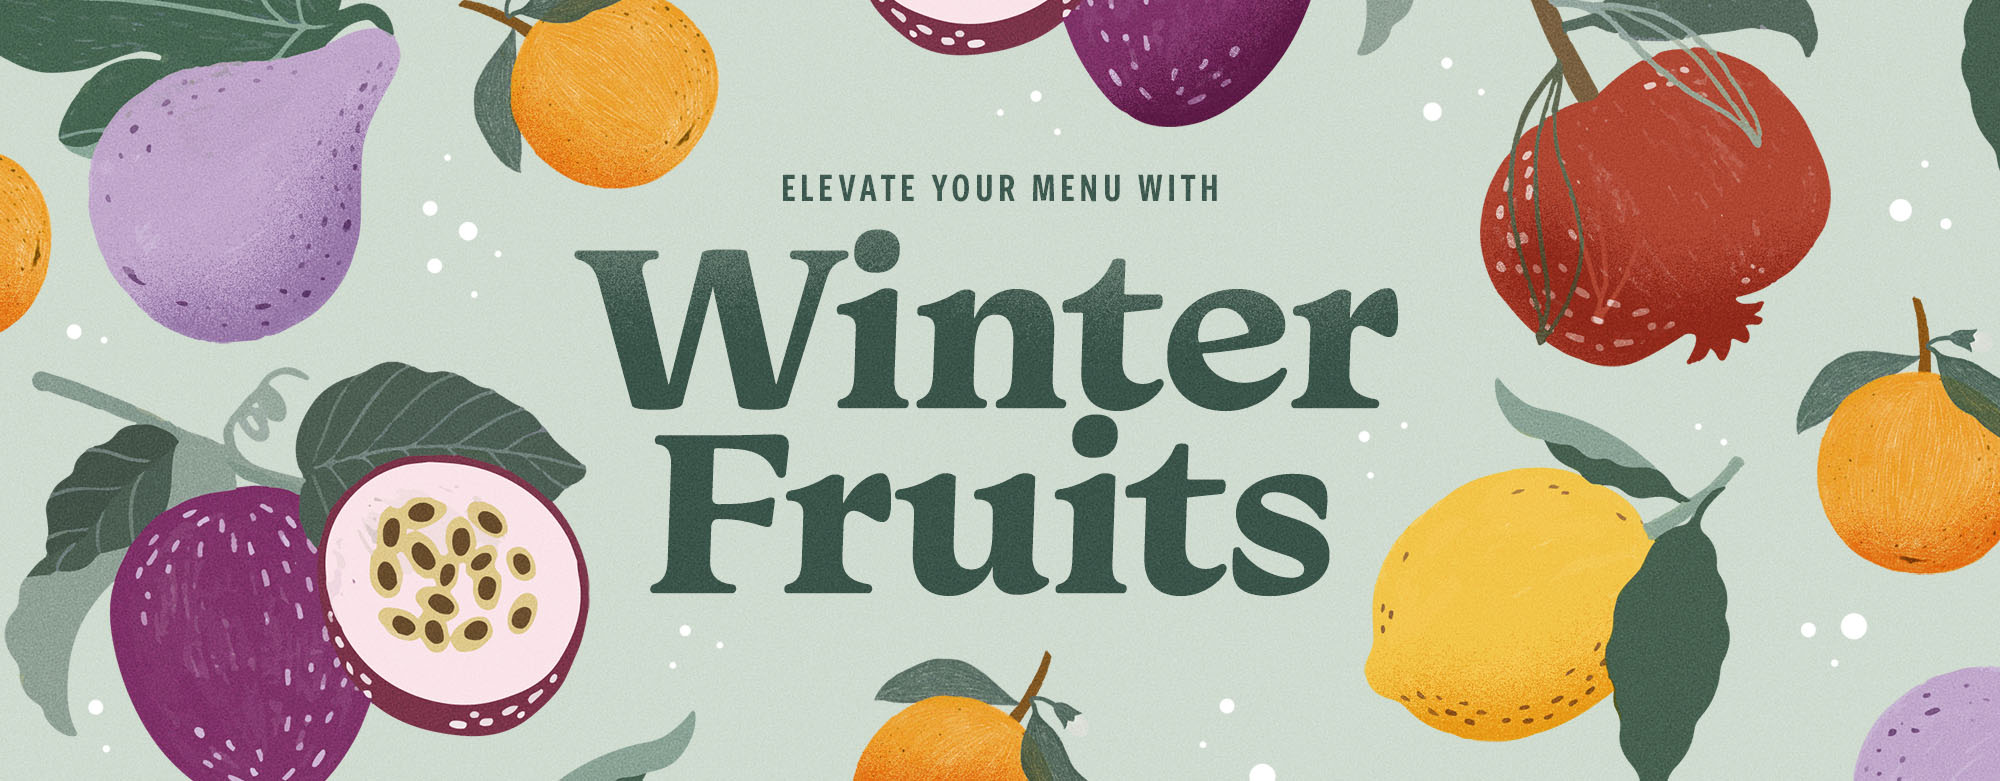 https://www.webstaurantstore.com/images/blogs/4360/blog_winterfruits_header.jpg